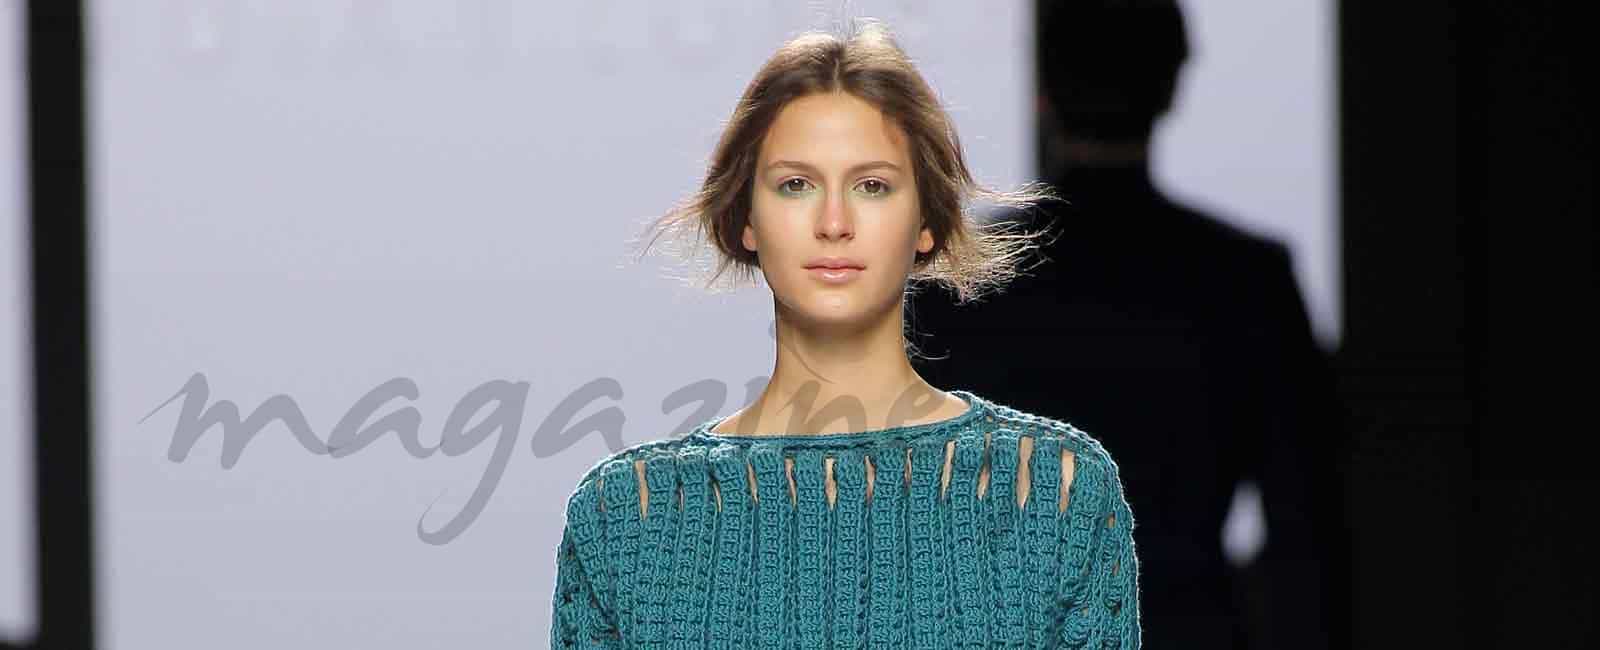 Mercedes Benz Fashion Week: Devota & Lomba Otoño-Invierno 2017/18